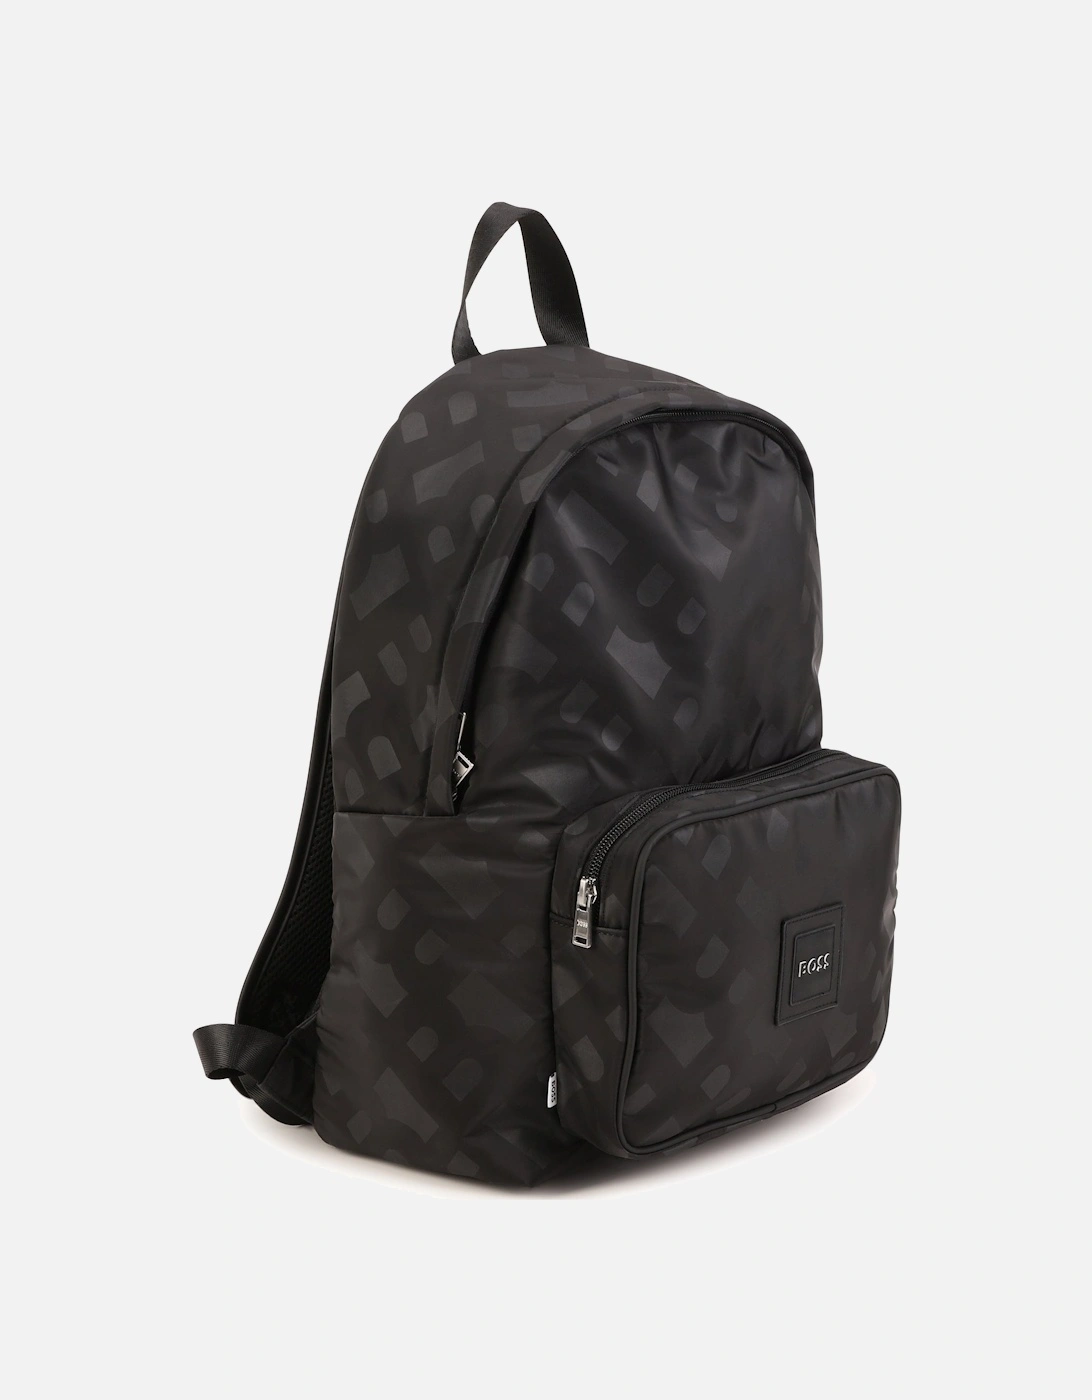 Boys Black Backpack ( 40 cm )